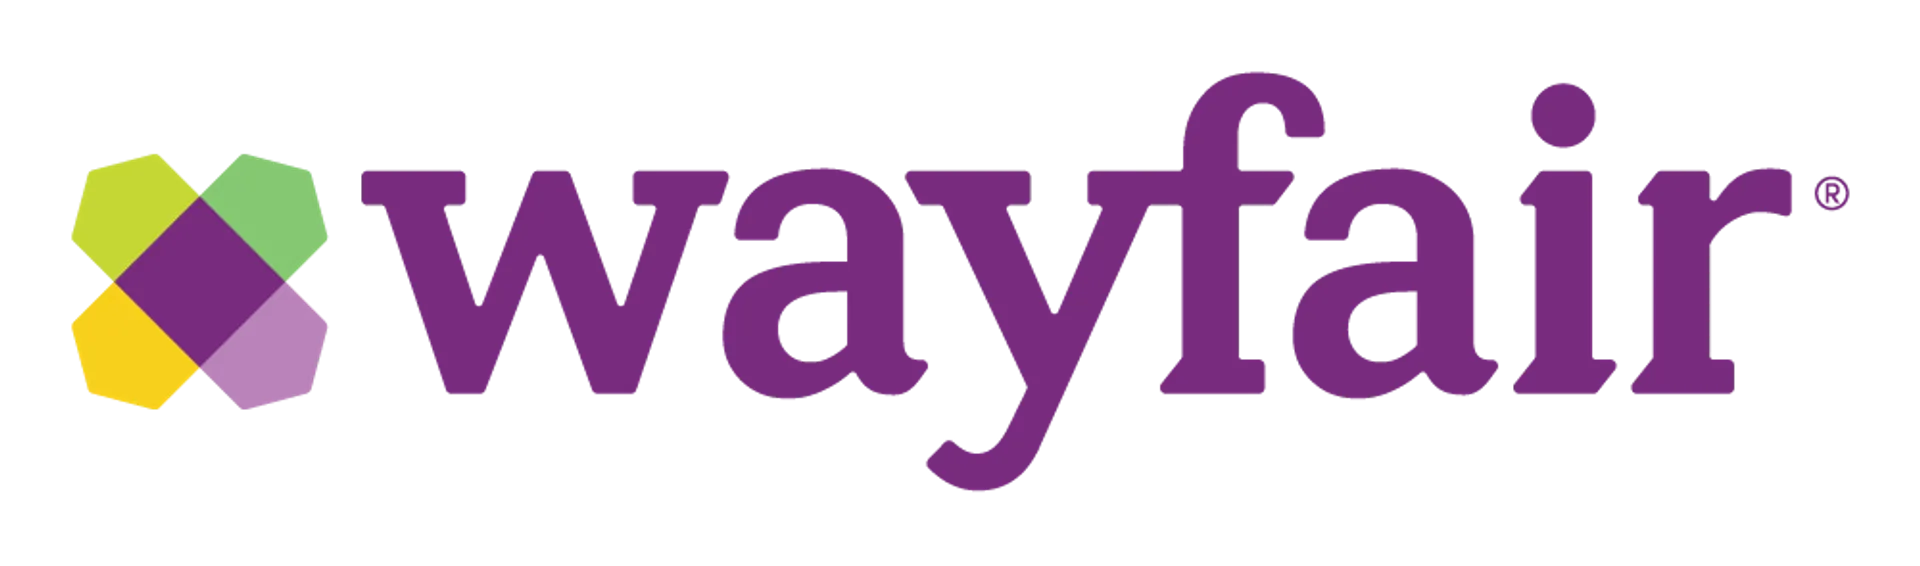 WAYFAIR logo current weekly ad